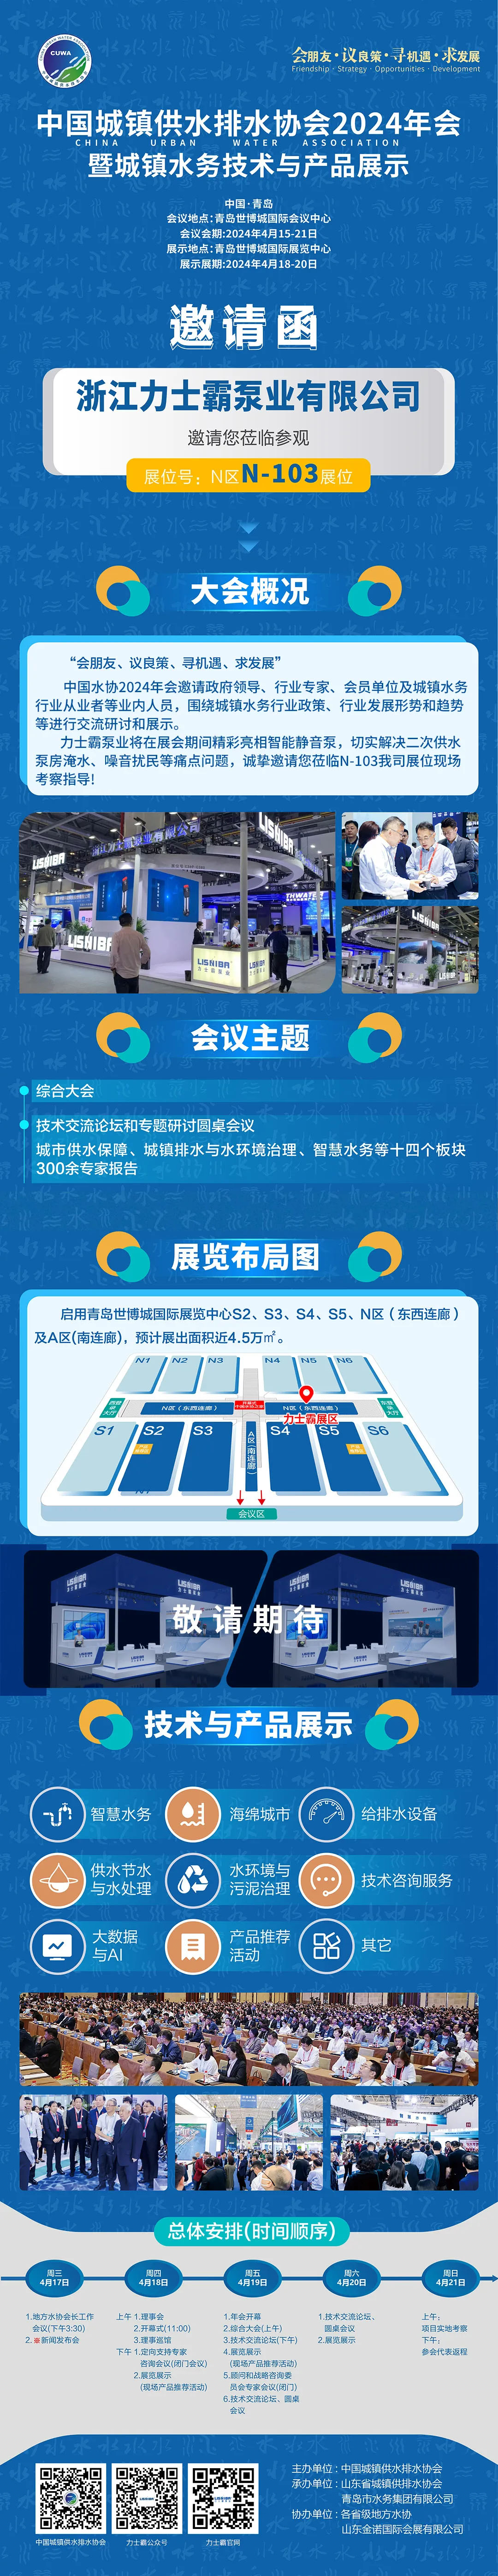 邀请函 | 力士霸邀您相约中国城镇供水排水协会2024年会暨城镇水务技术与产品展示(图1)